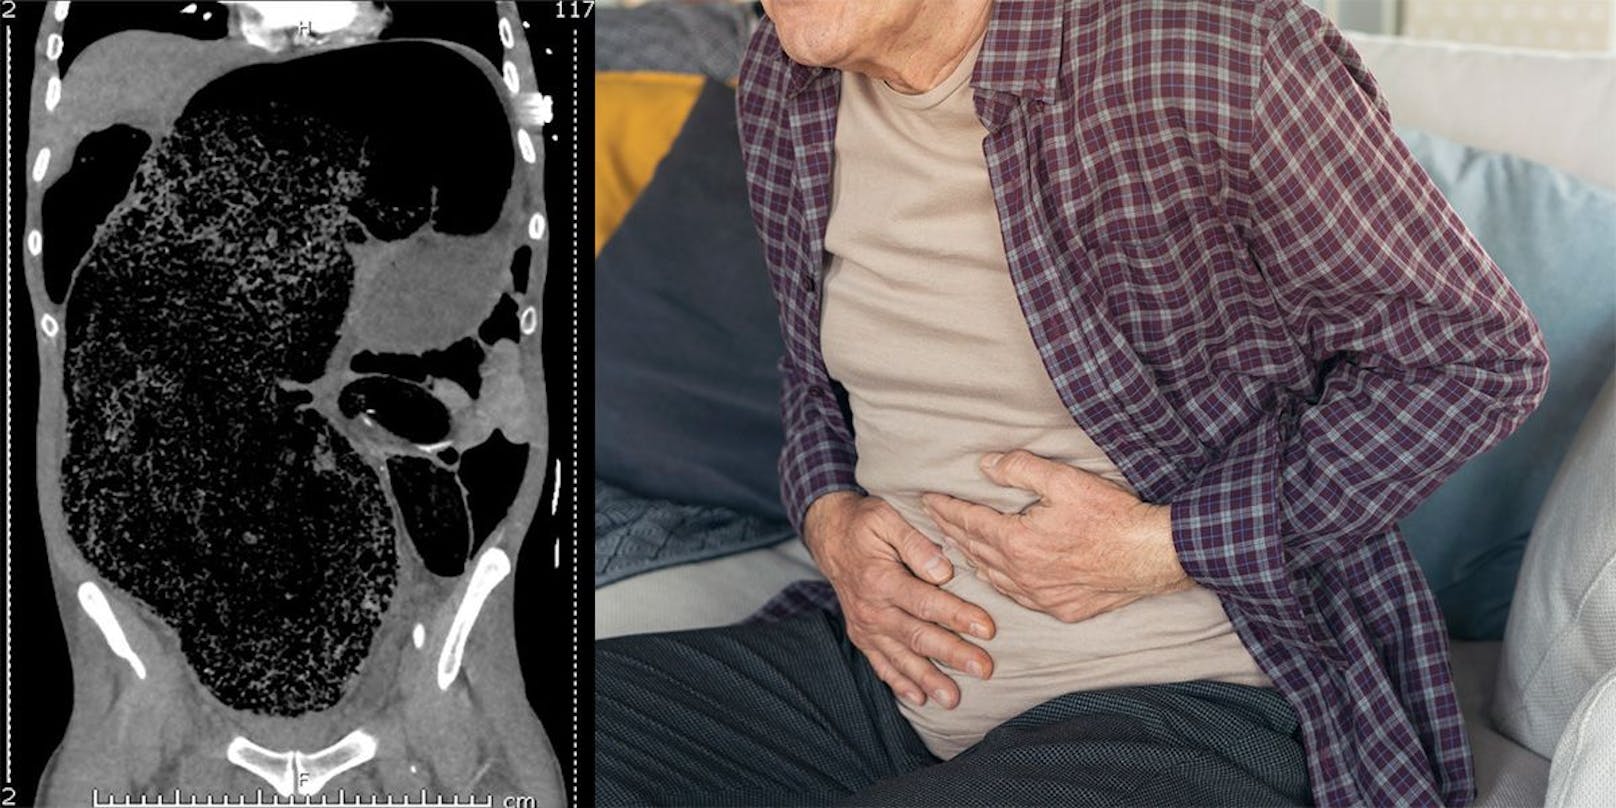 Die Ultraschallaufnahme des Mannes (li.) zeigt den massiv aufgeblähten Dickdarm. Symbolbild (re.)